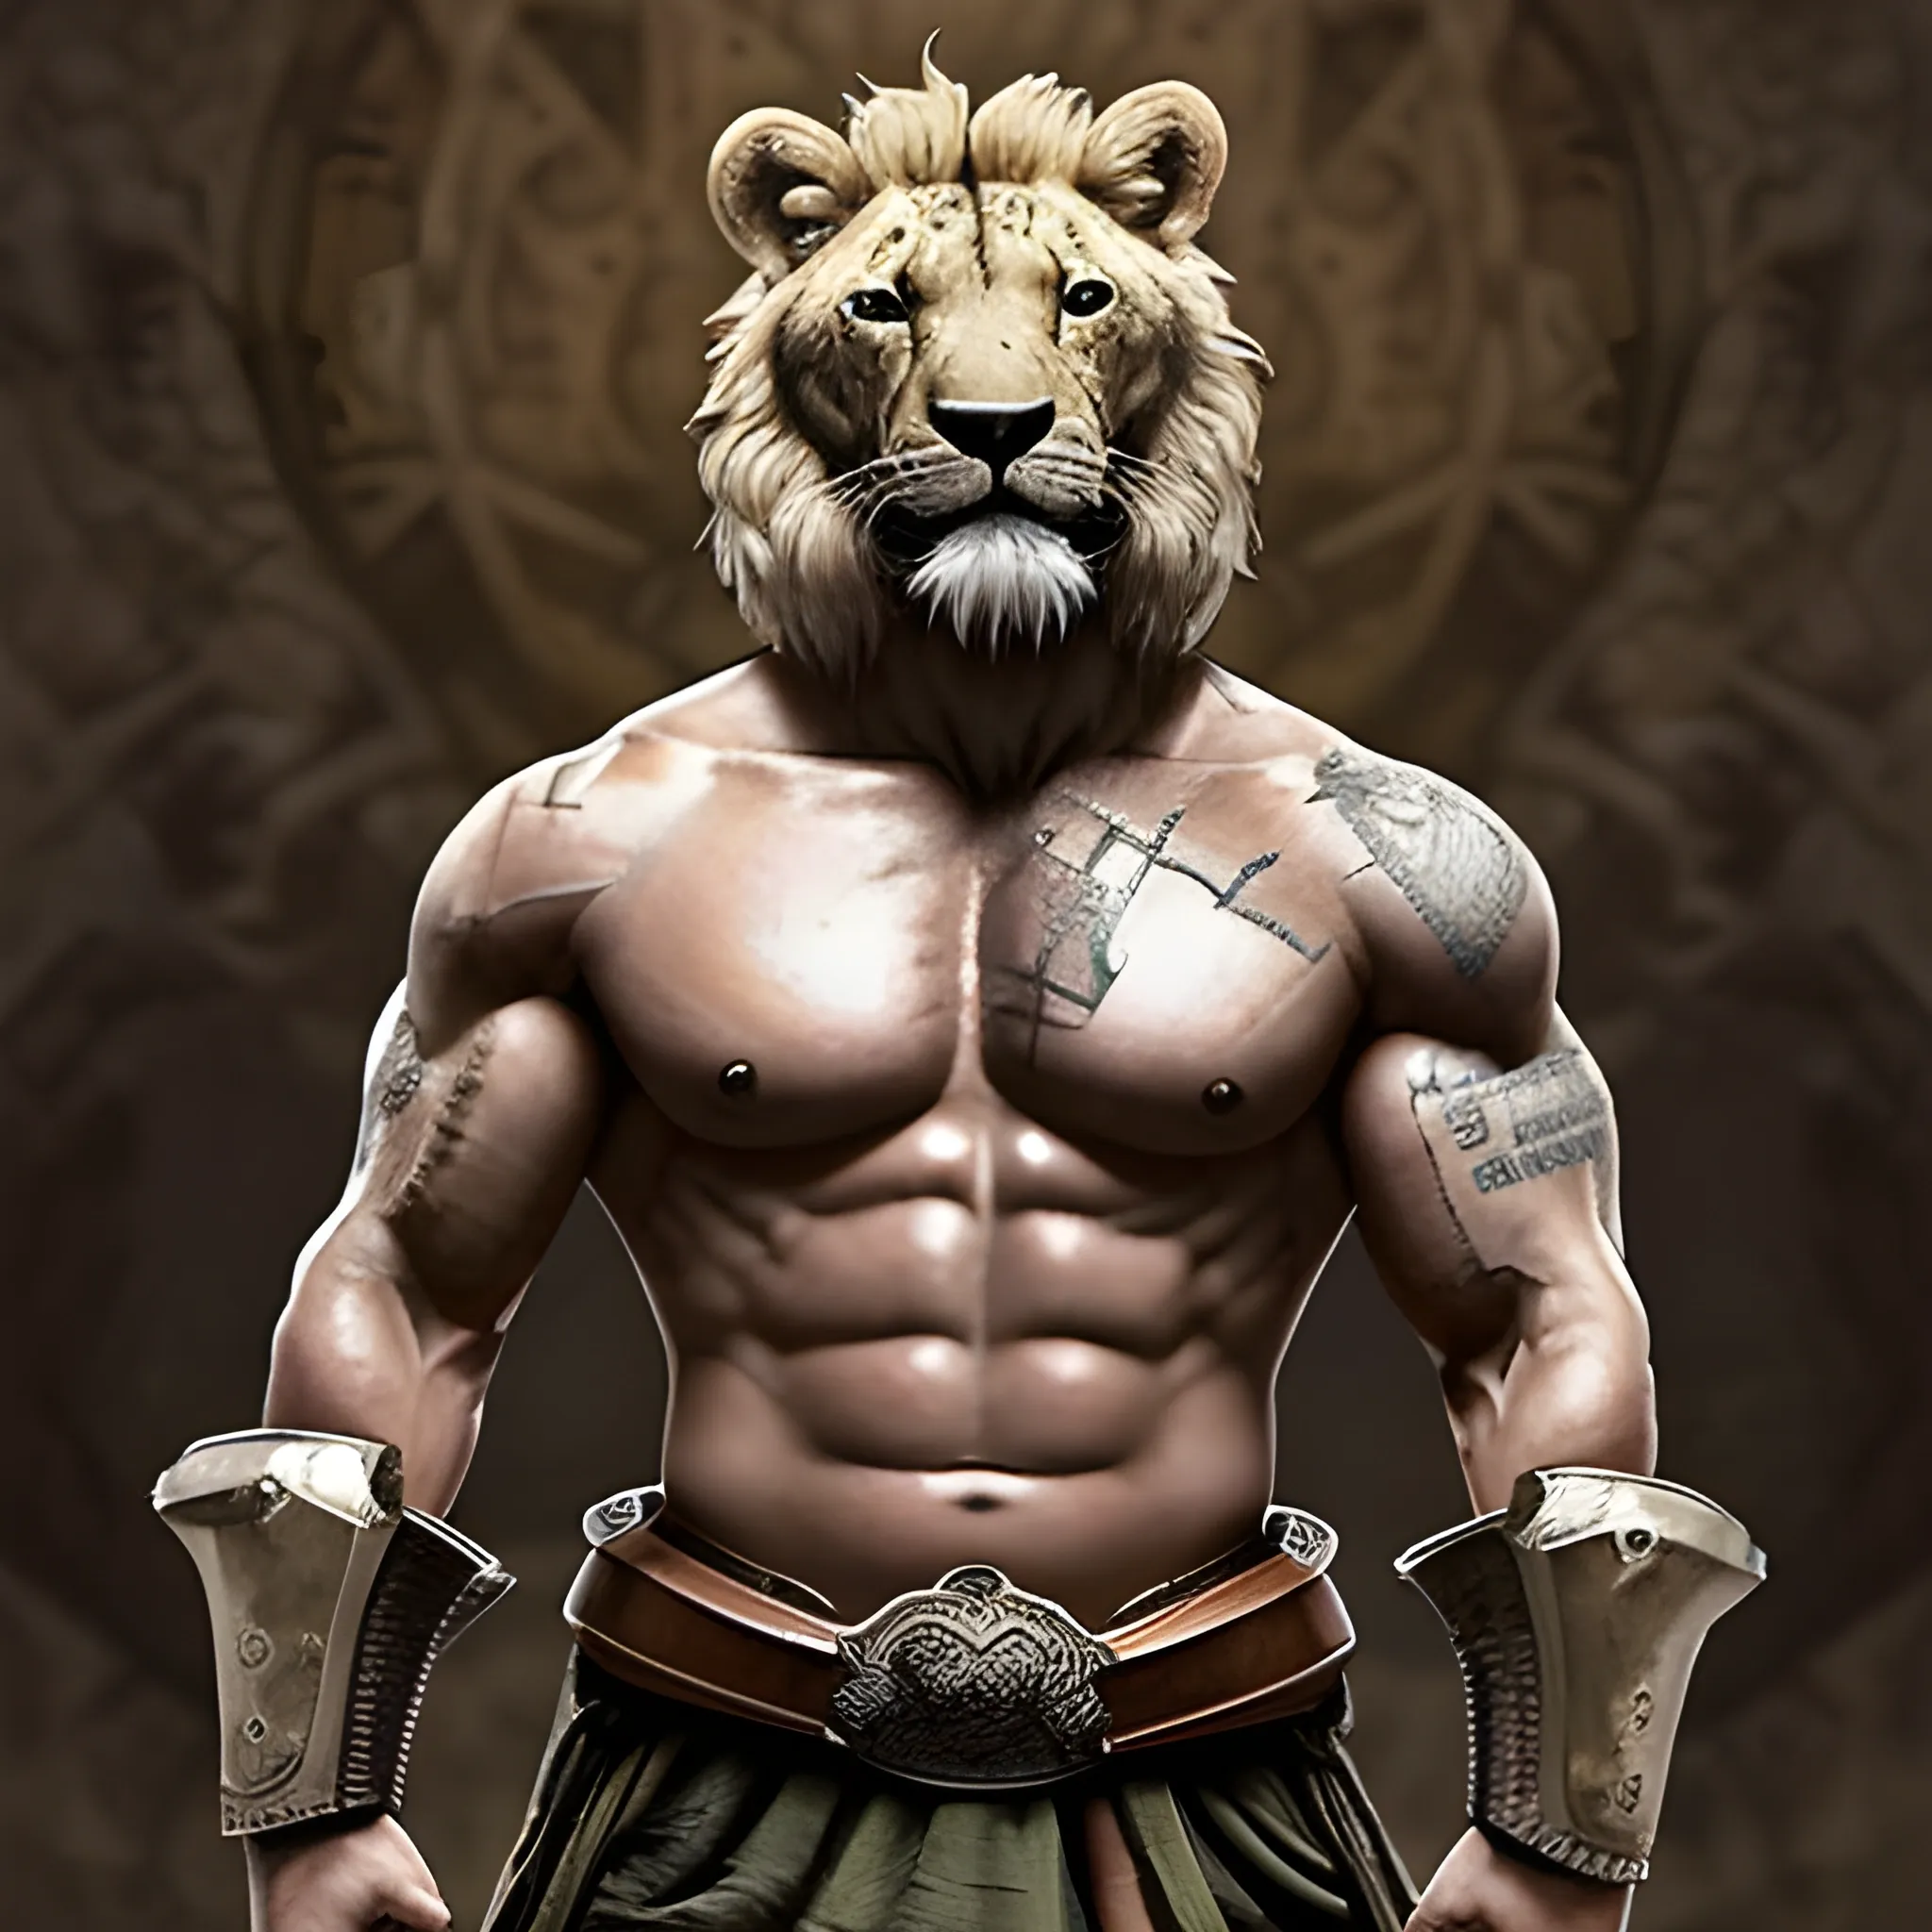 Diseña una imagen épica de un león con el cuerpo fuerte y musculoso lleno de marcas de guerra, con armadura reluciente y un escudo majestuoso, listo para enfrentarse a cualquier desafío